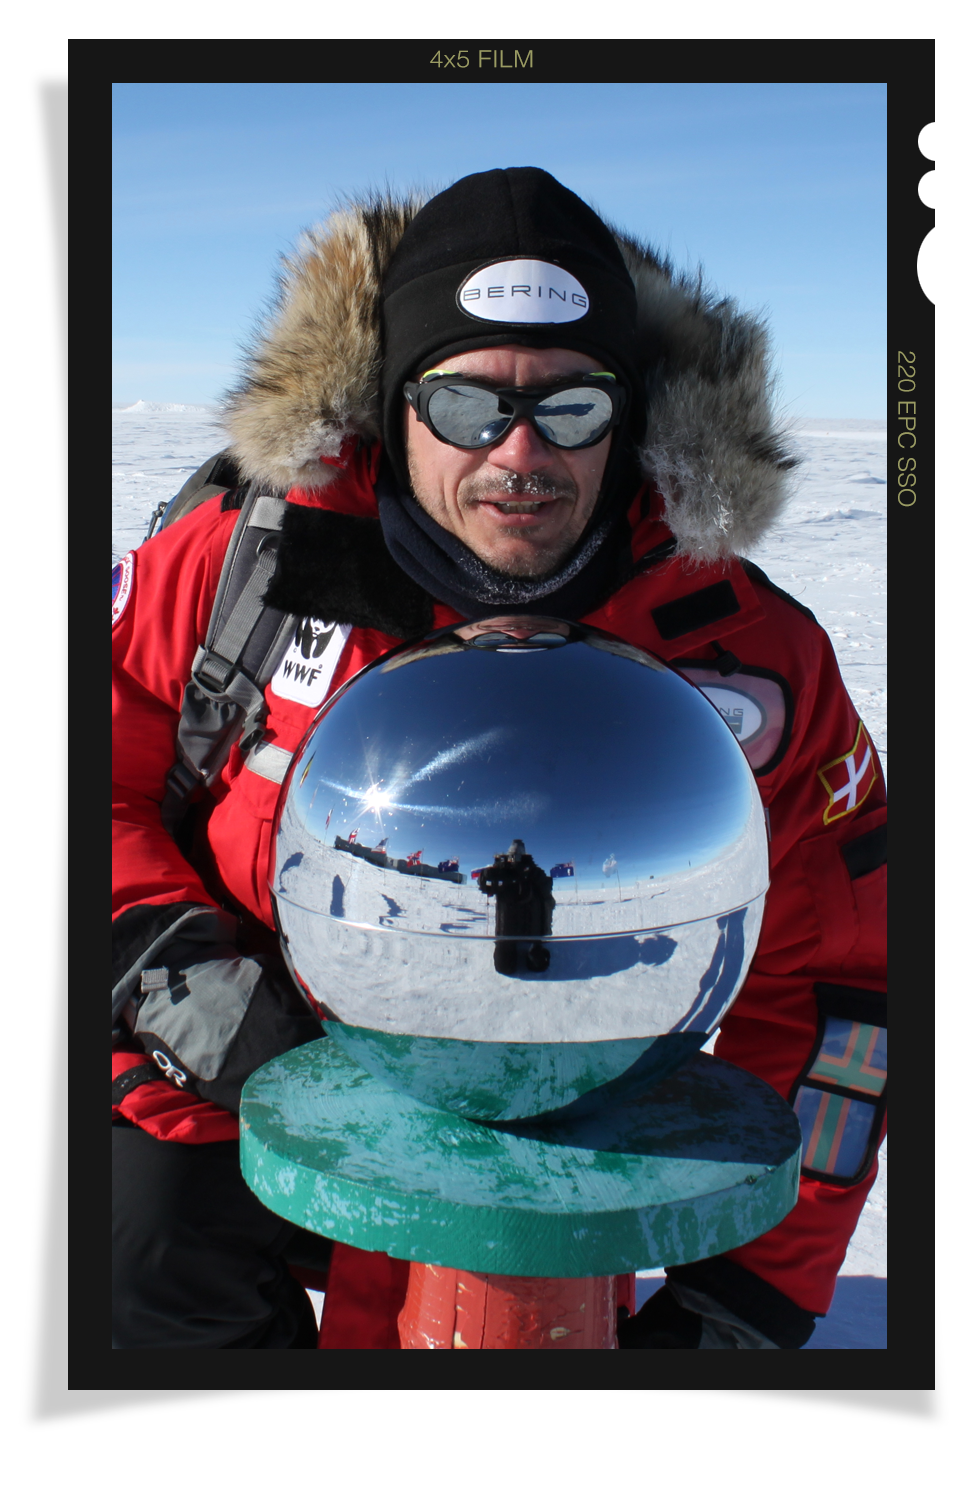 Kærskov at the South Pole.